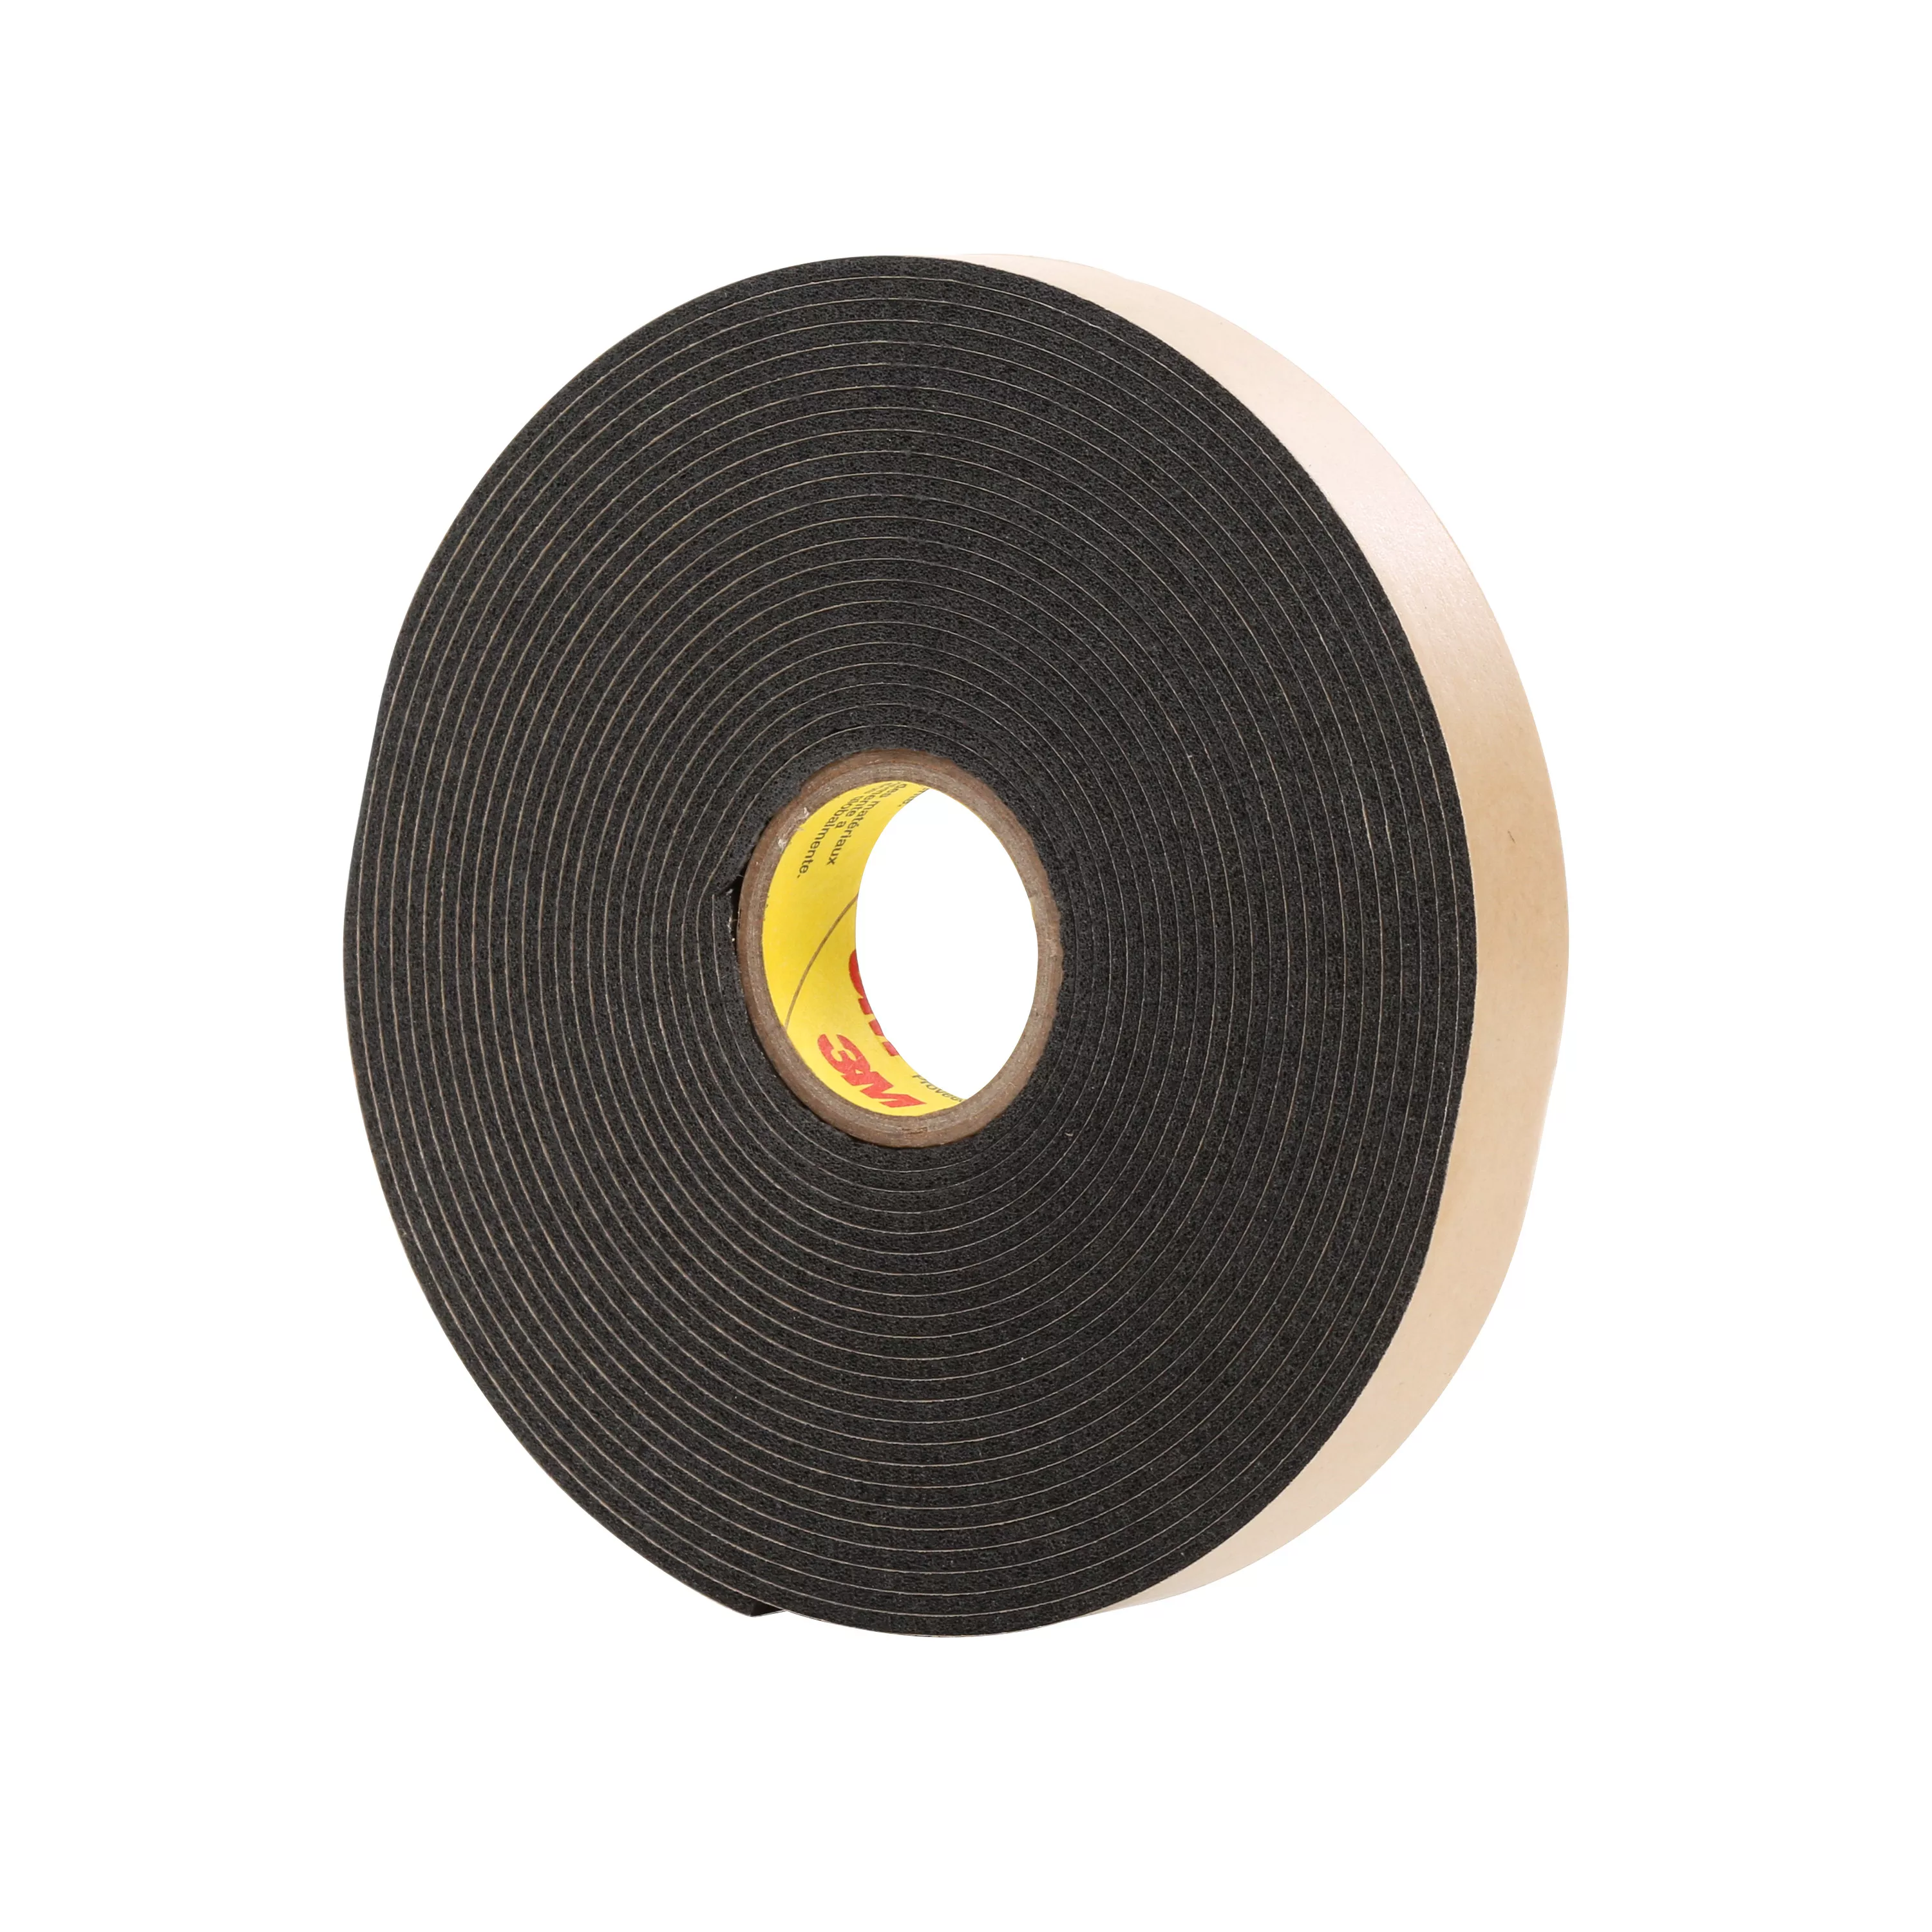 3M™ Double Coated Polyethylene Foam Tape 4496B, Black, 1/4 in x 36 yd,
62 mil, 36 Roll/Case